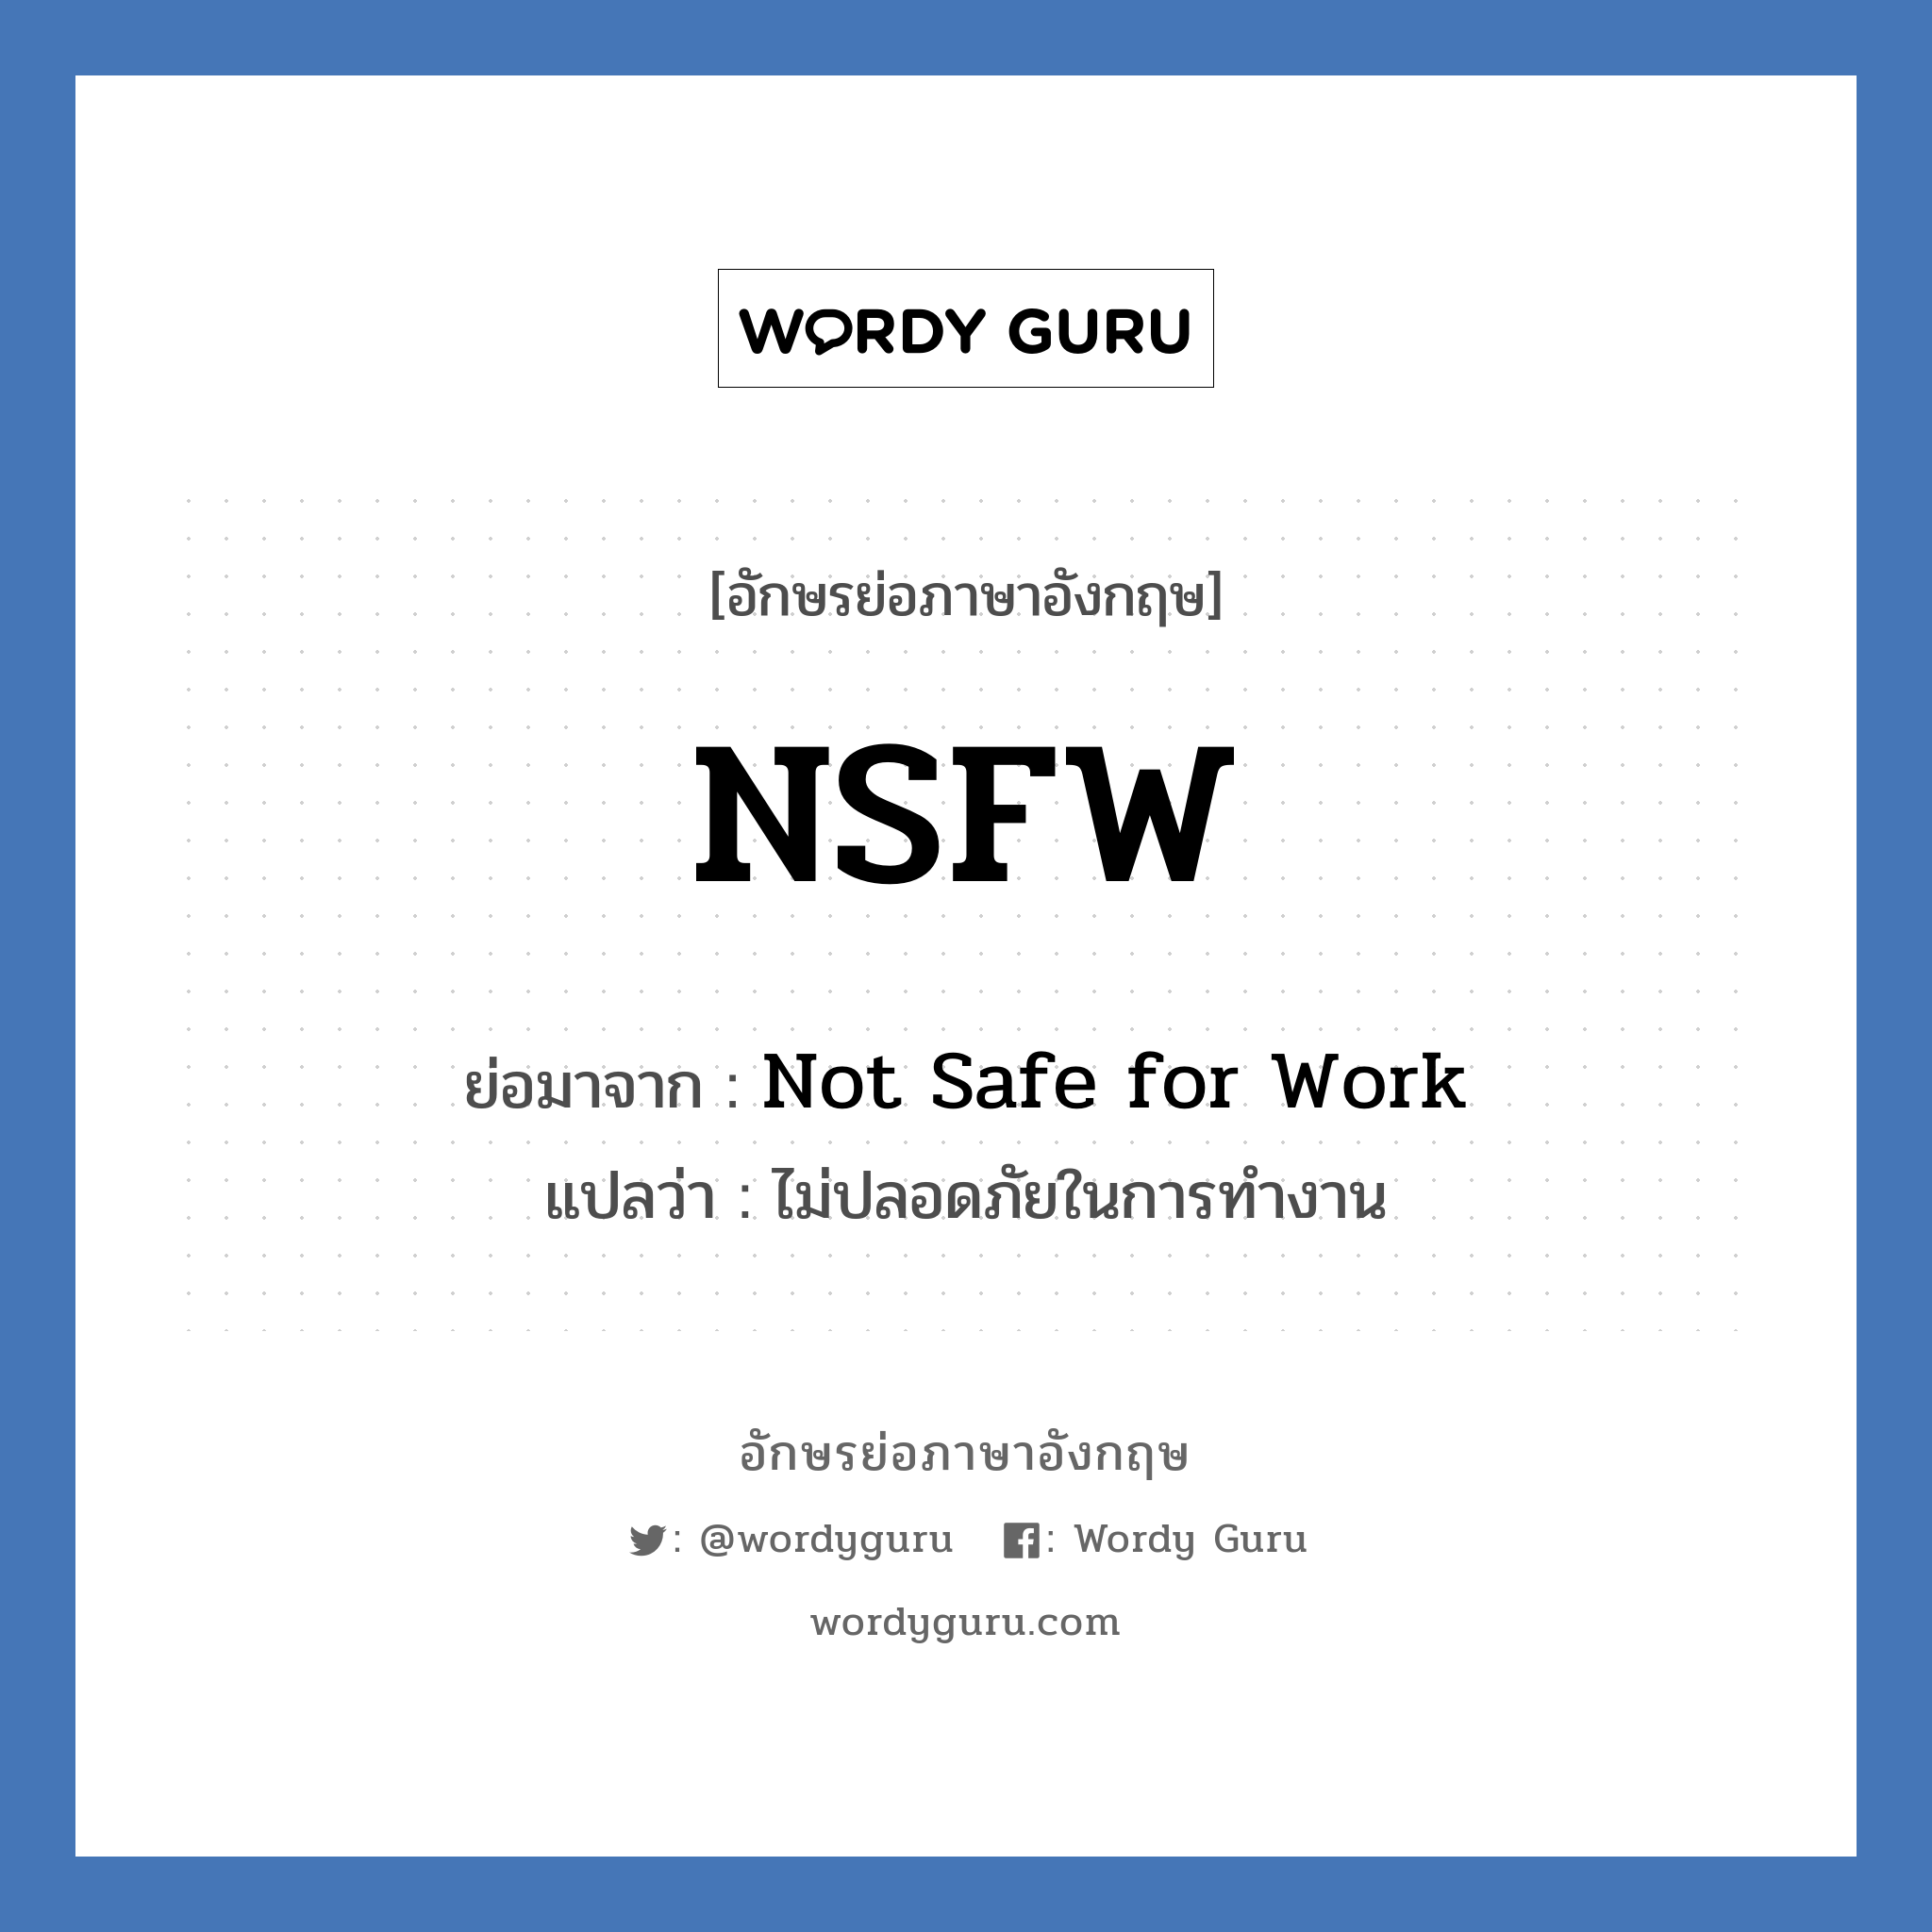 NSFW ย่อมาจาก? แปลว่า?, อักษรย่อภาษาอังกฤษ NSFW ย่อมาจาก Not Safe for Work แปลว่า ไม่ปลอดภัยในการทำงาน